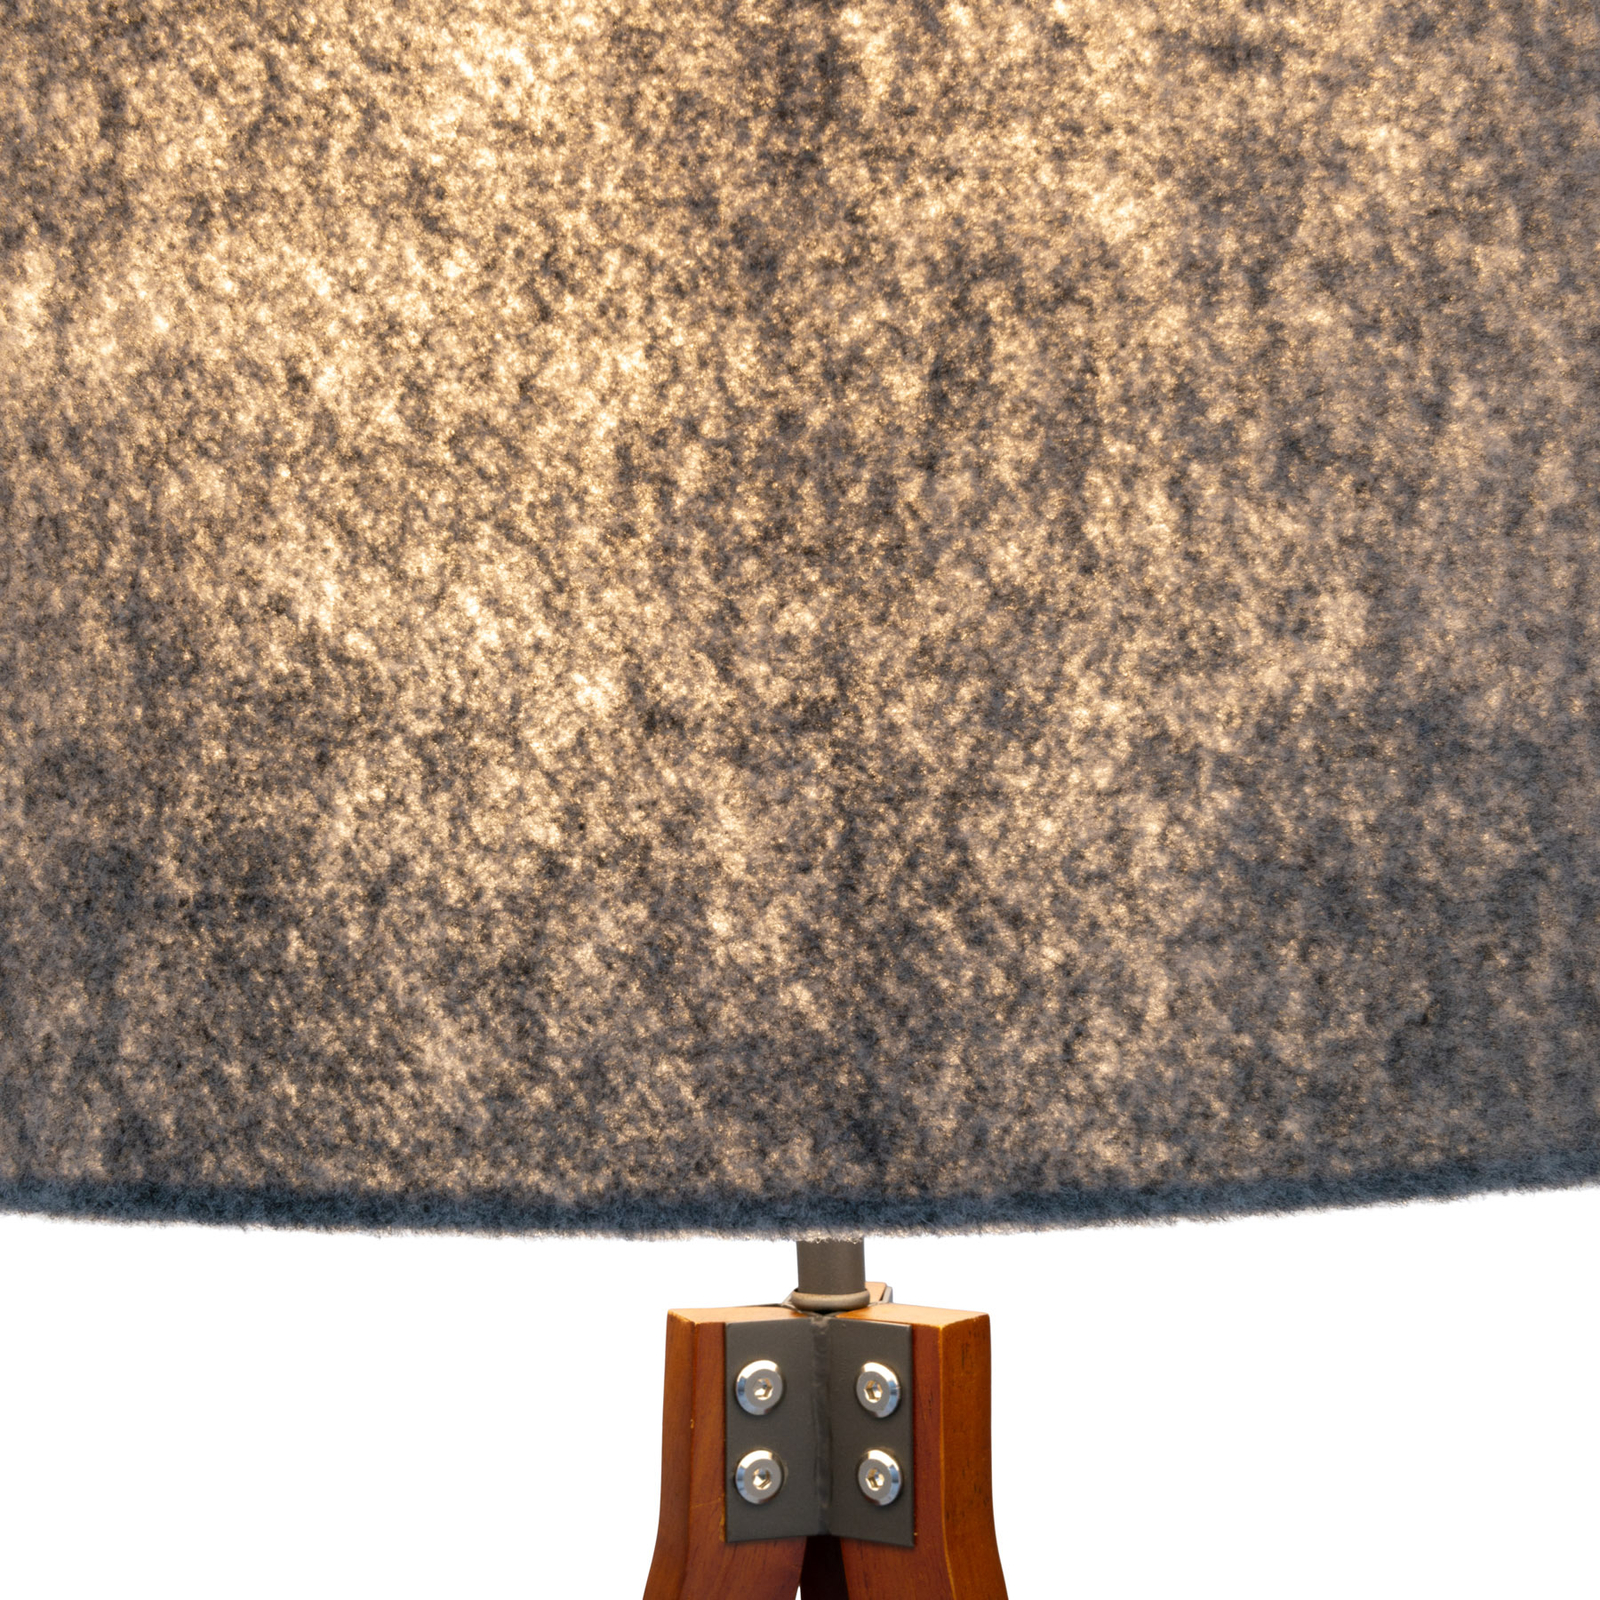 Подова лампа 2072528, дървен статив, текстилен абажур